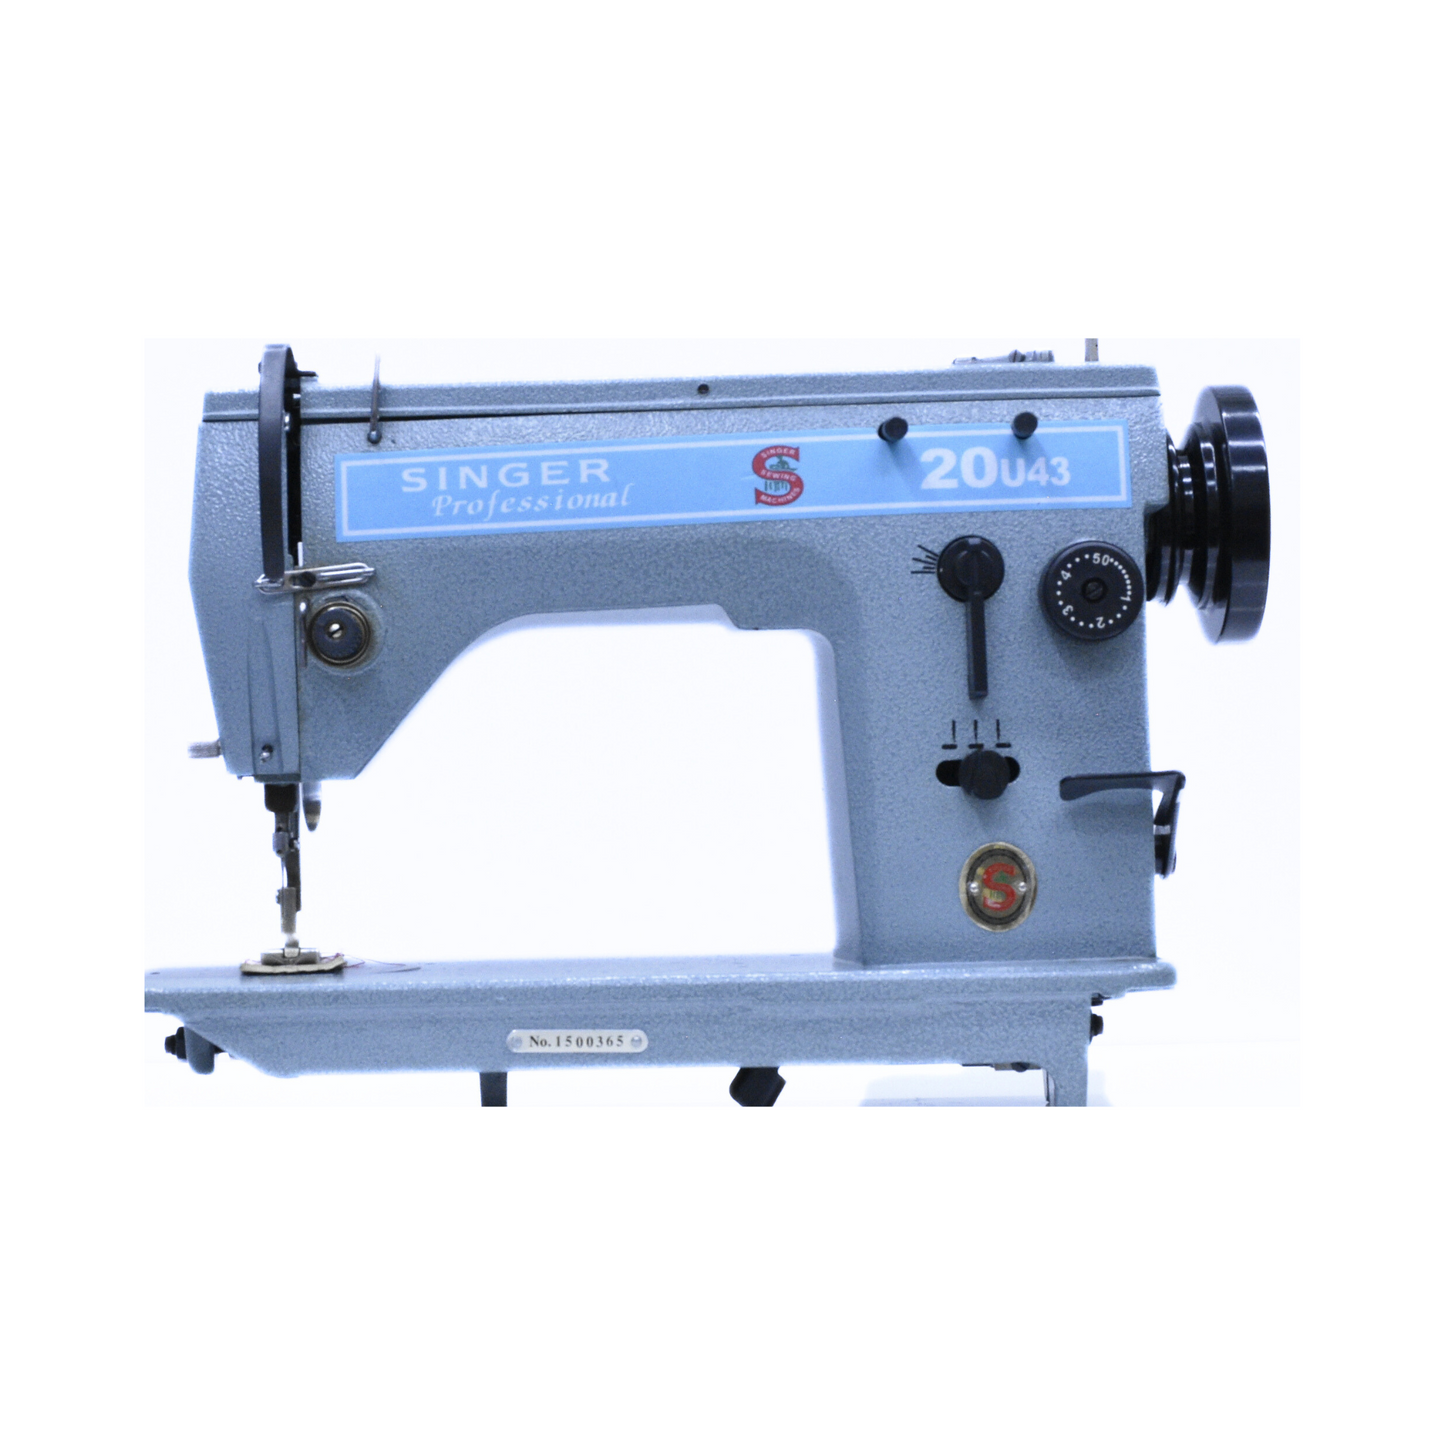 Singer 20U43 zigzag machine - Sewing machine - Blue - Front view